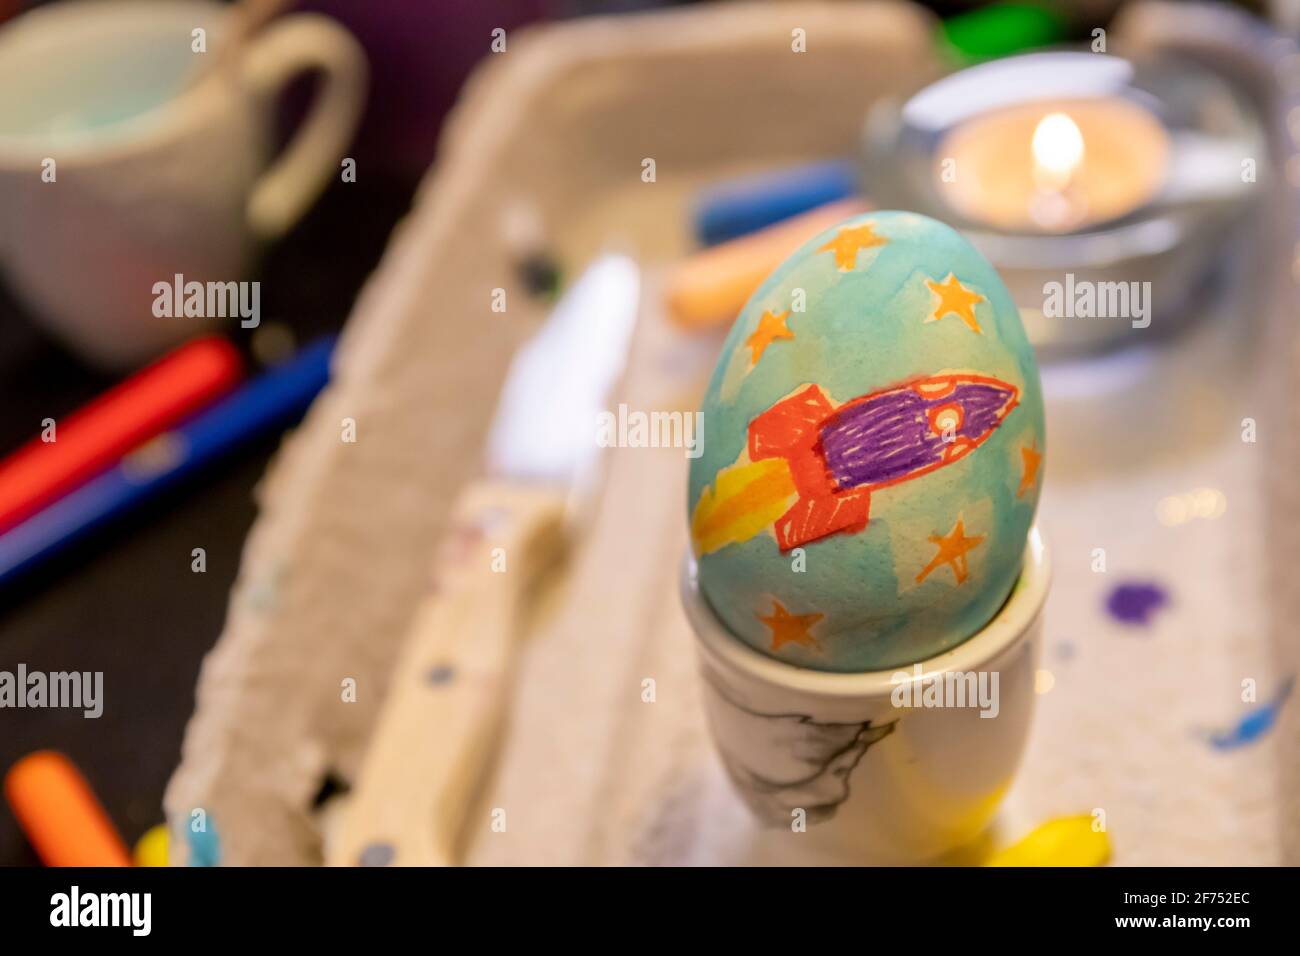 Easter Egg Painting and Decorating Activity Concept: Farbenfrohe handgefertigte Easter Eggs. Vorbereitung auf die Feiertage. Stationäre Objekte auf dem Tisch. Stockfoto